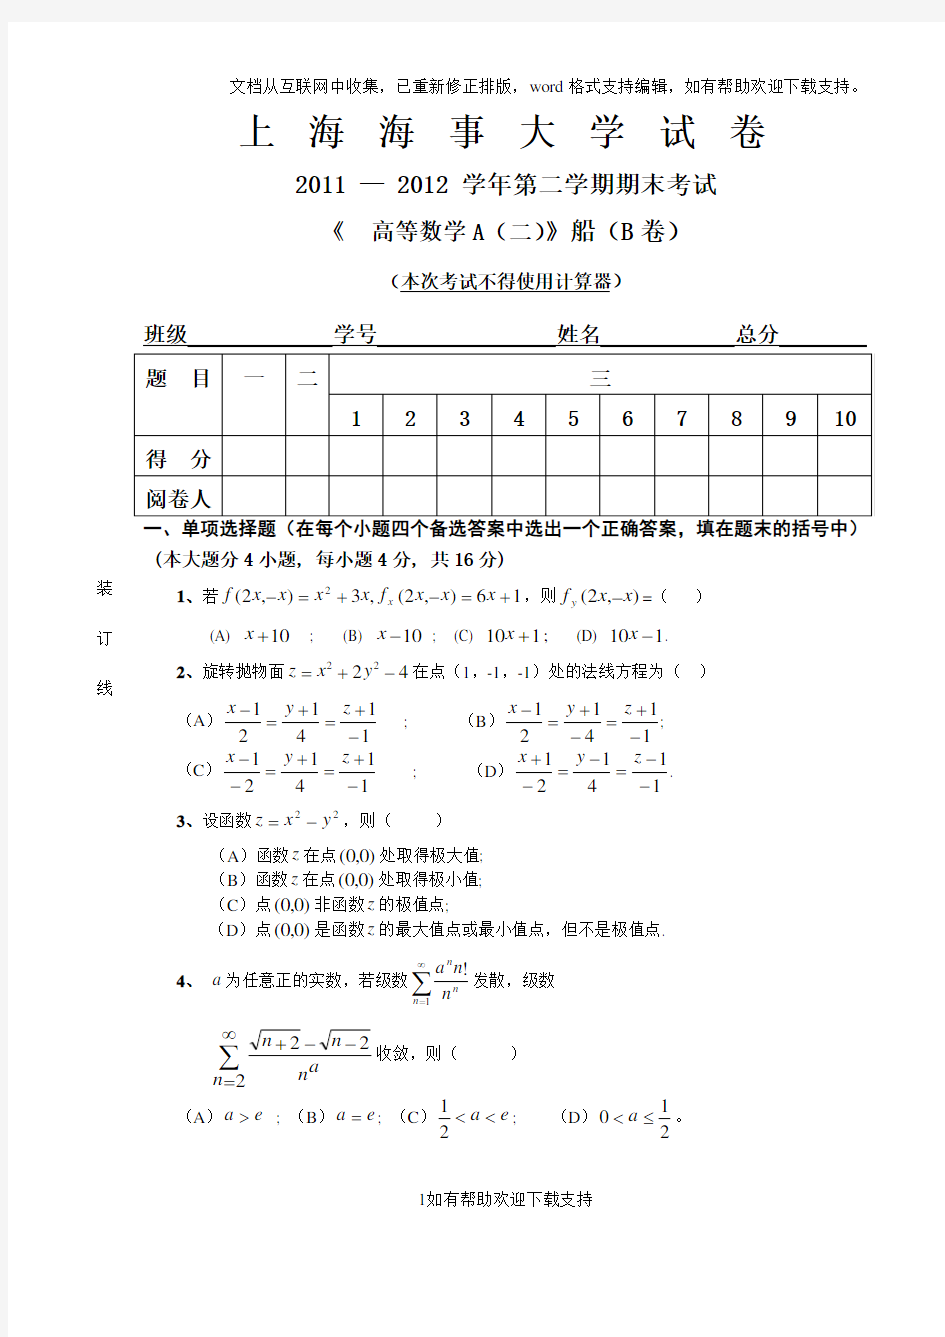 上海海事大学高等数学A(二)船“2020“2020(B)